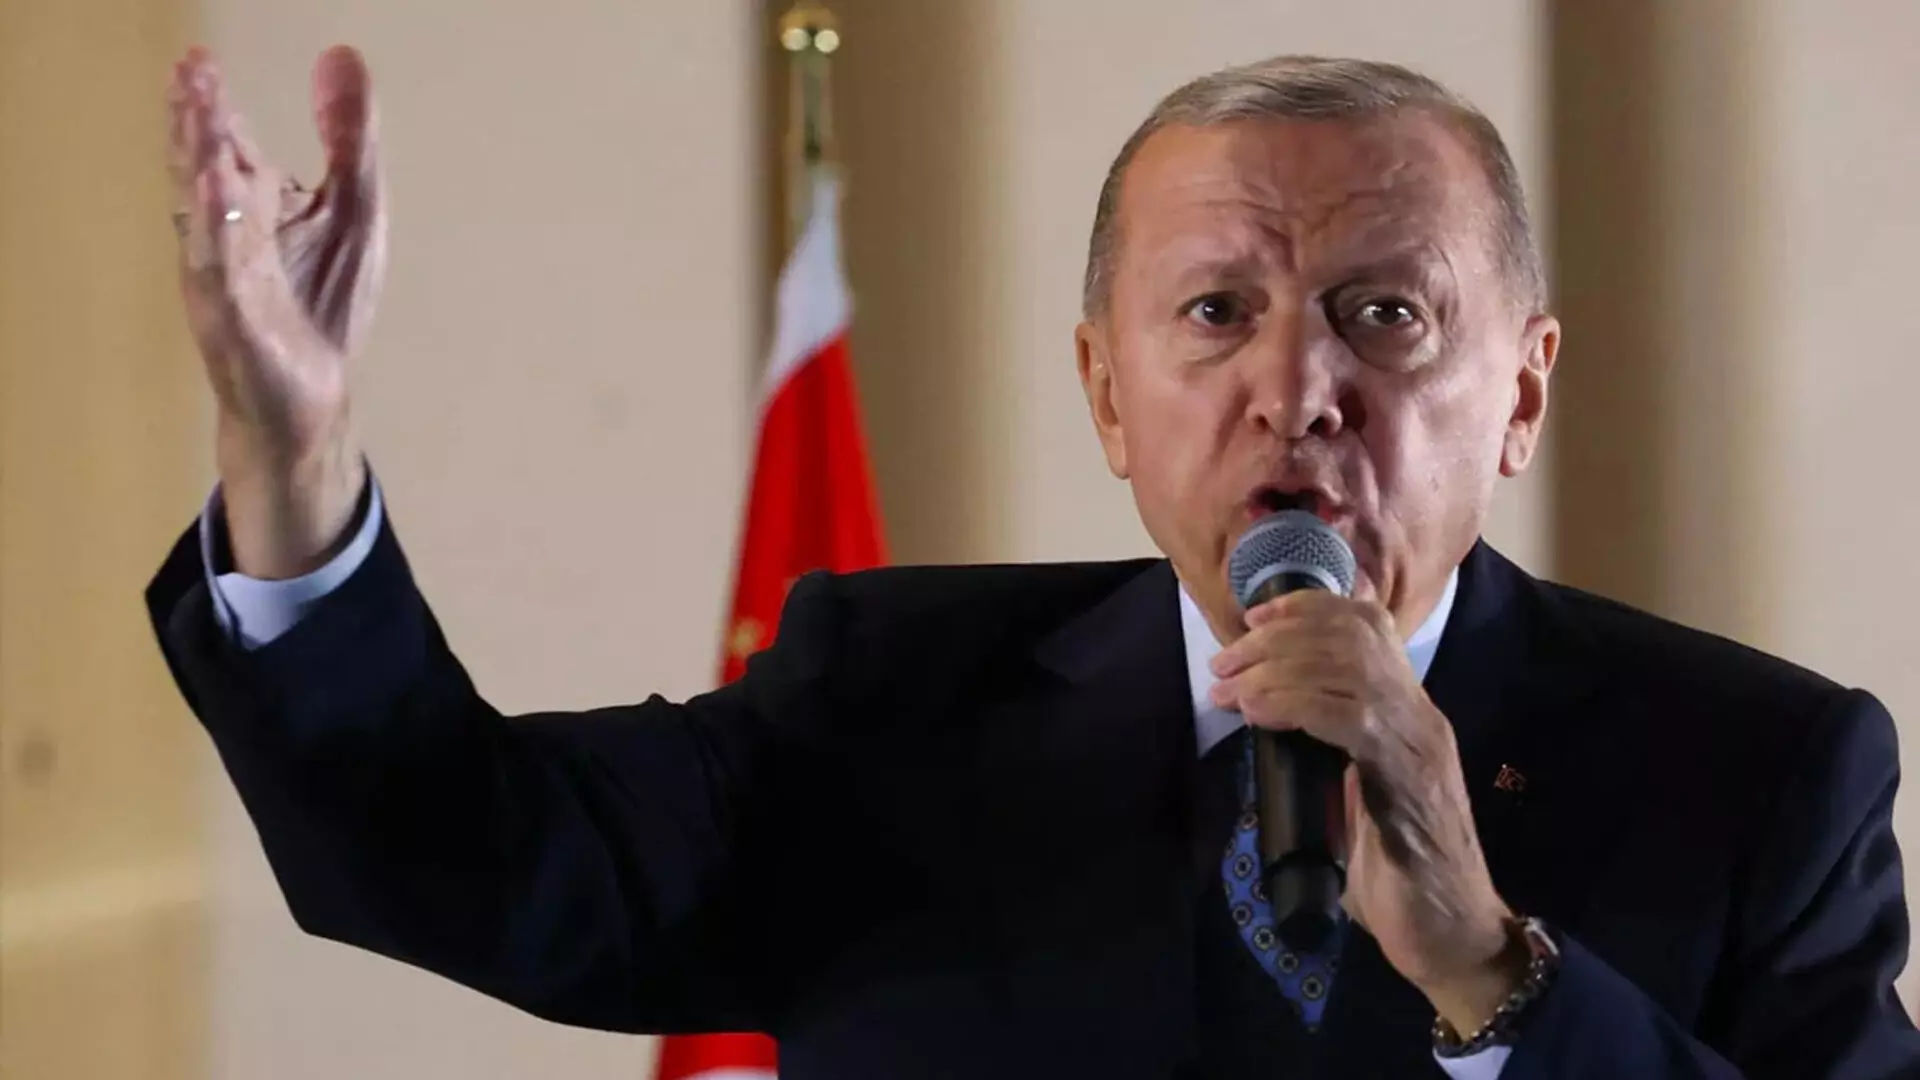 तुर्की के राष्ट्रपति एर्दोगन का कहना है कि हमास प्रमुख इस सप्ताह के अंत में तुर्की का दौरा करेंगे